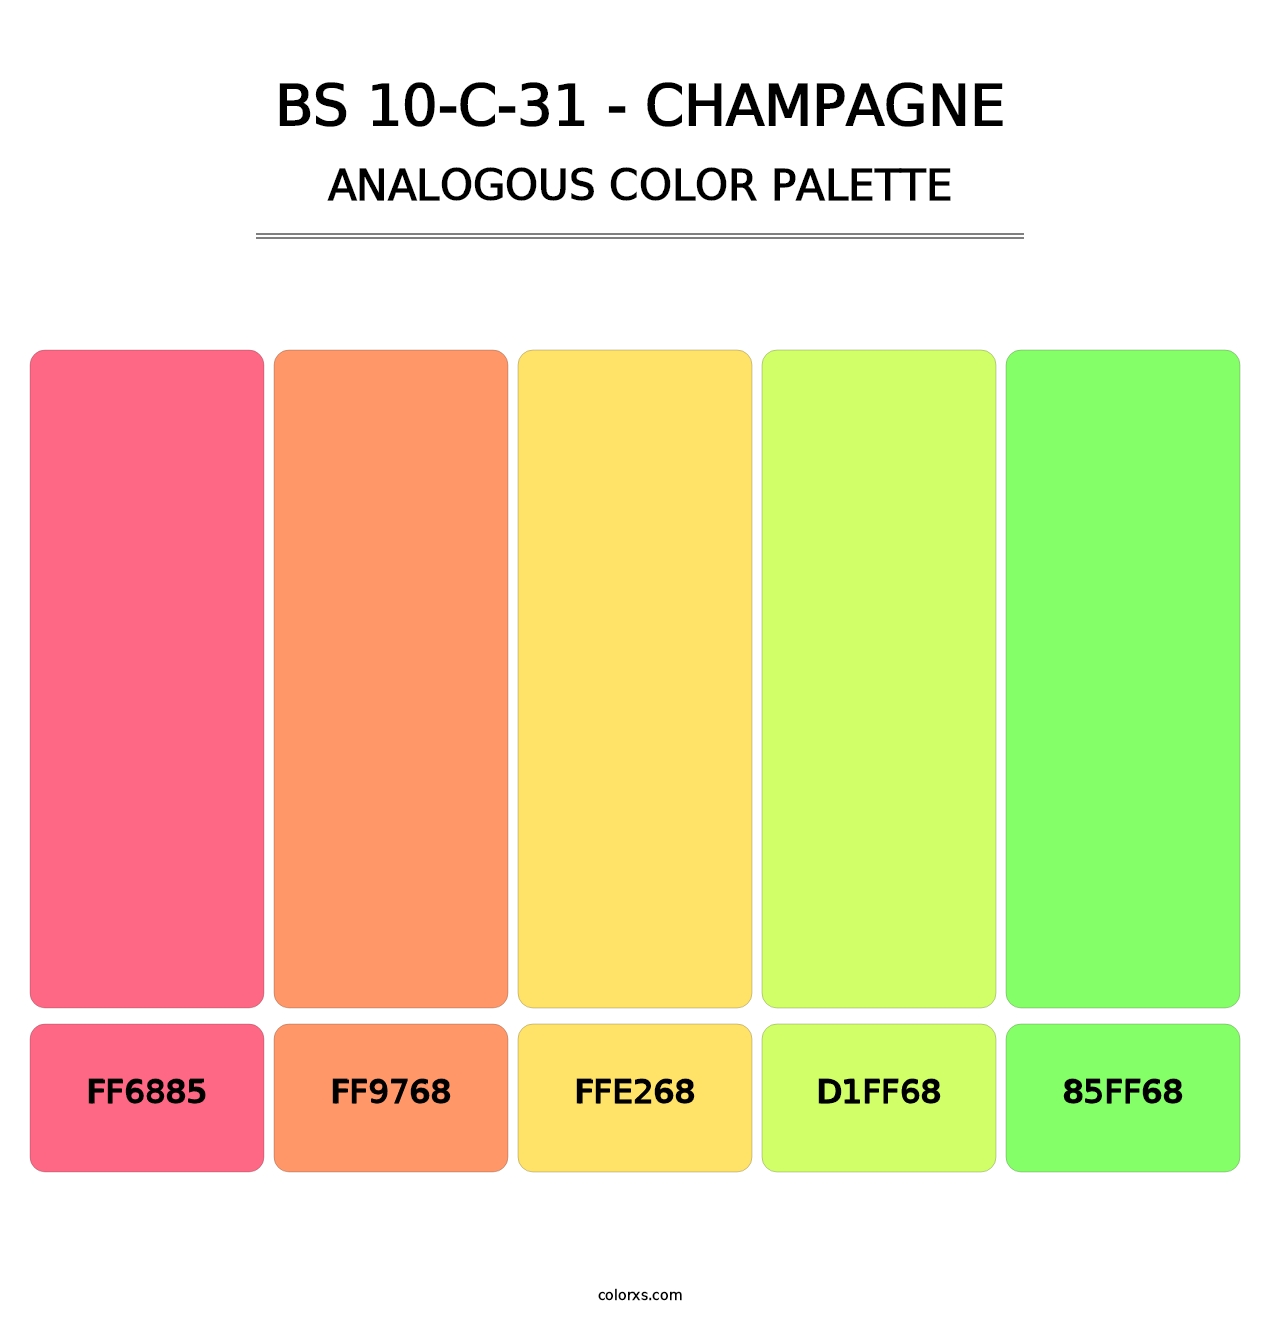 BS 10-C-31 - Champagne - Analogous Color Palette